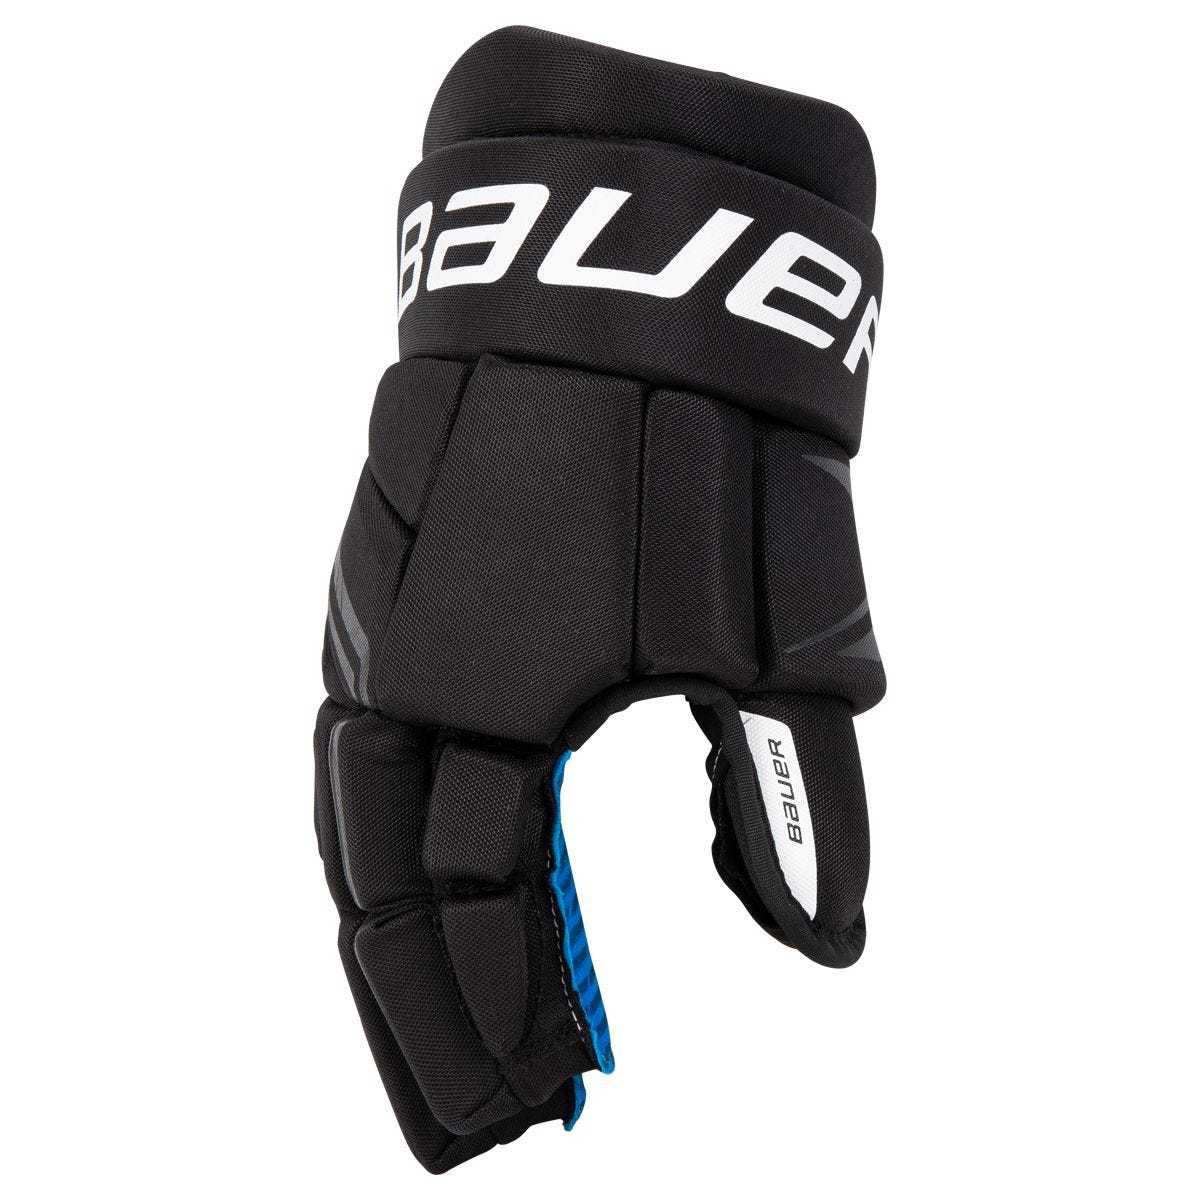 Bauer X Senior Hockey Gloves Black/white Size 14